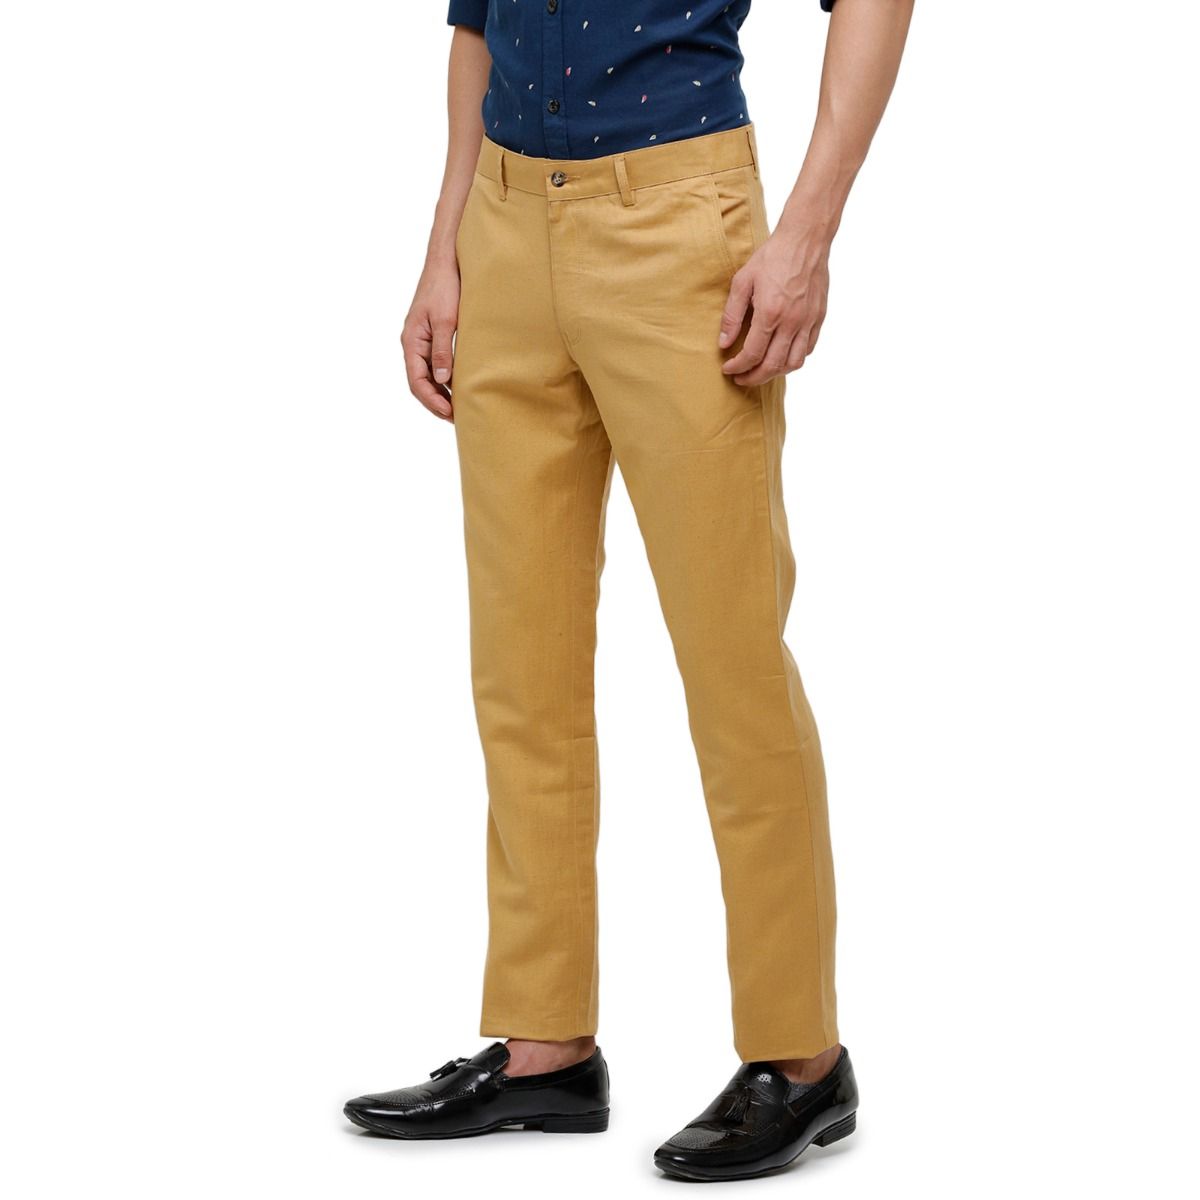 Buy Beige Trousers  Pants for Men by LINEN CLUB Online  Ajiocom